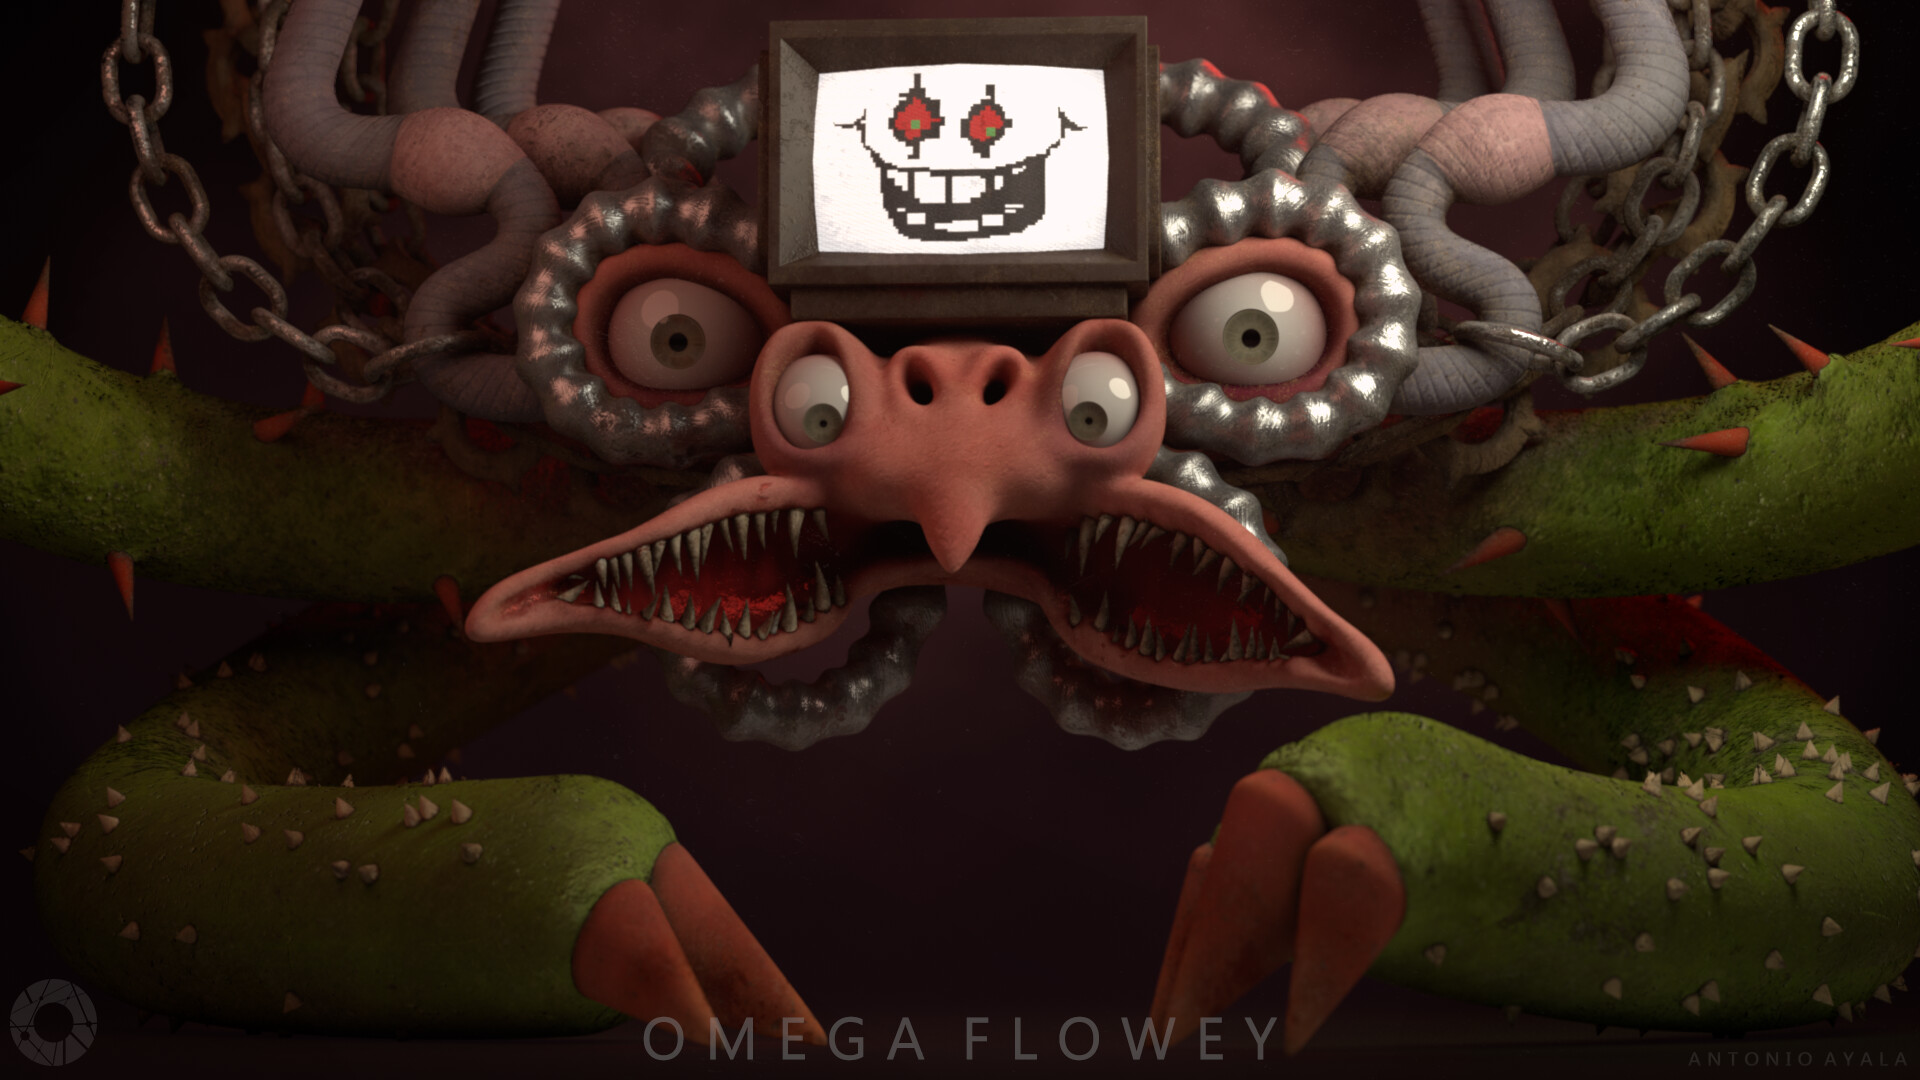 ArtStation - Omega Flowey